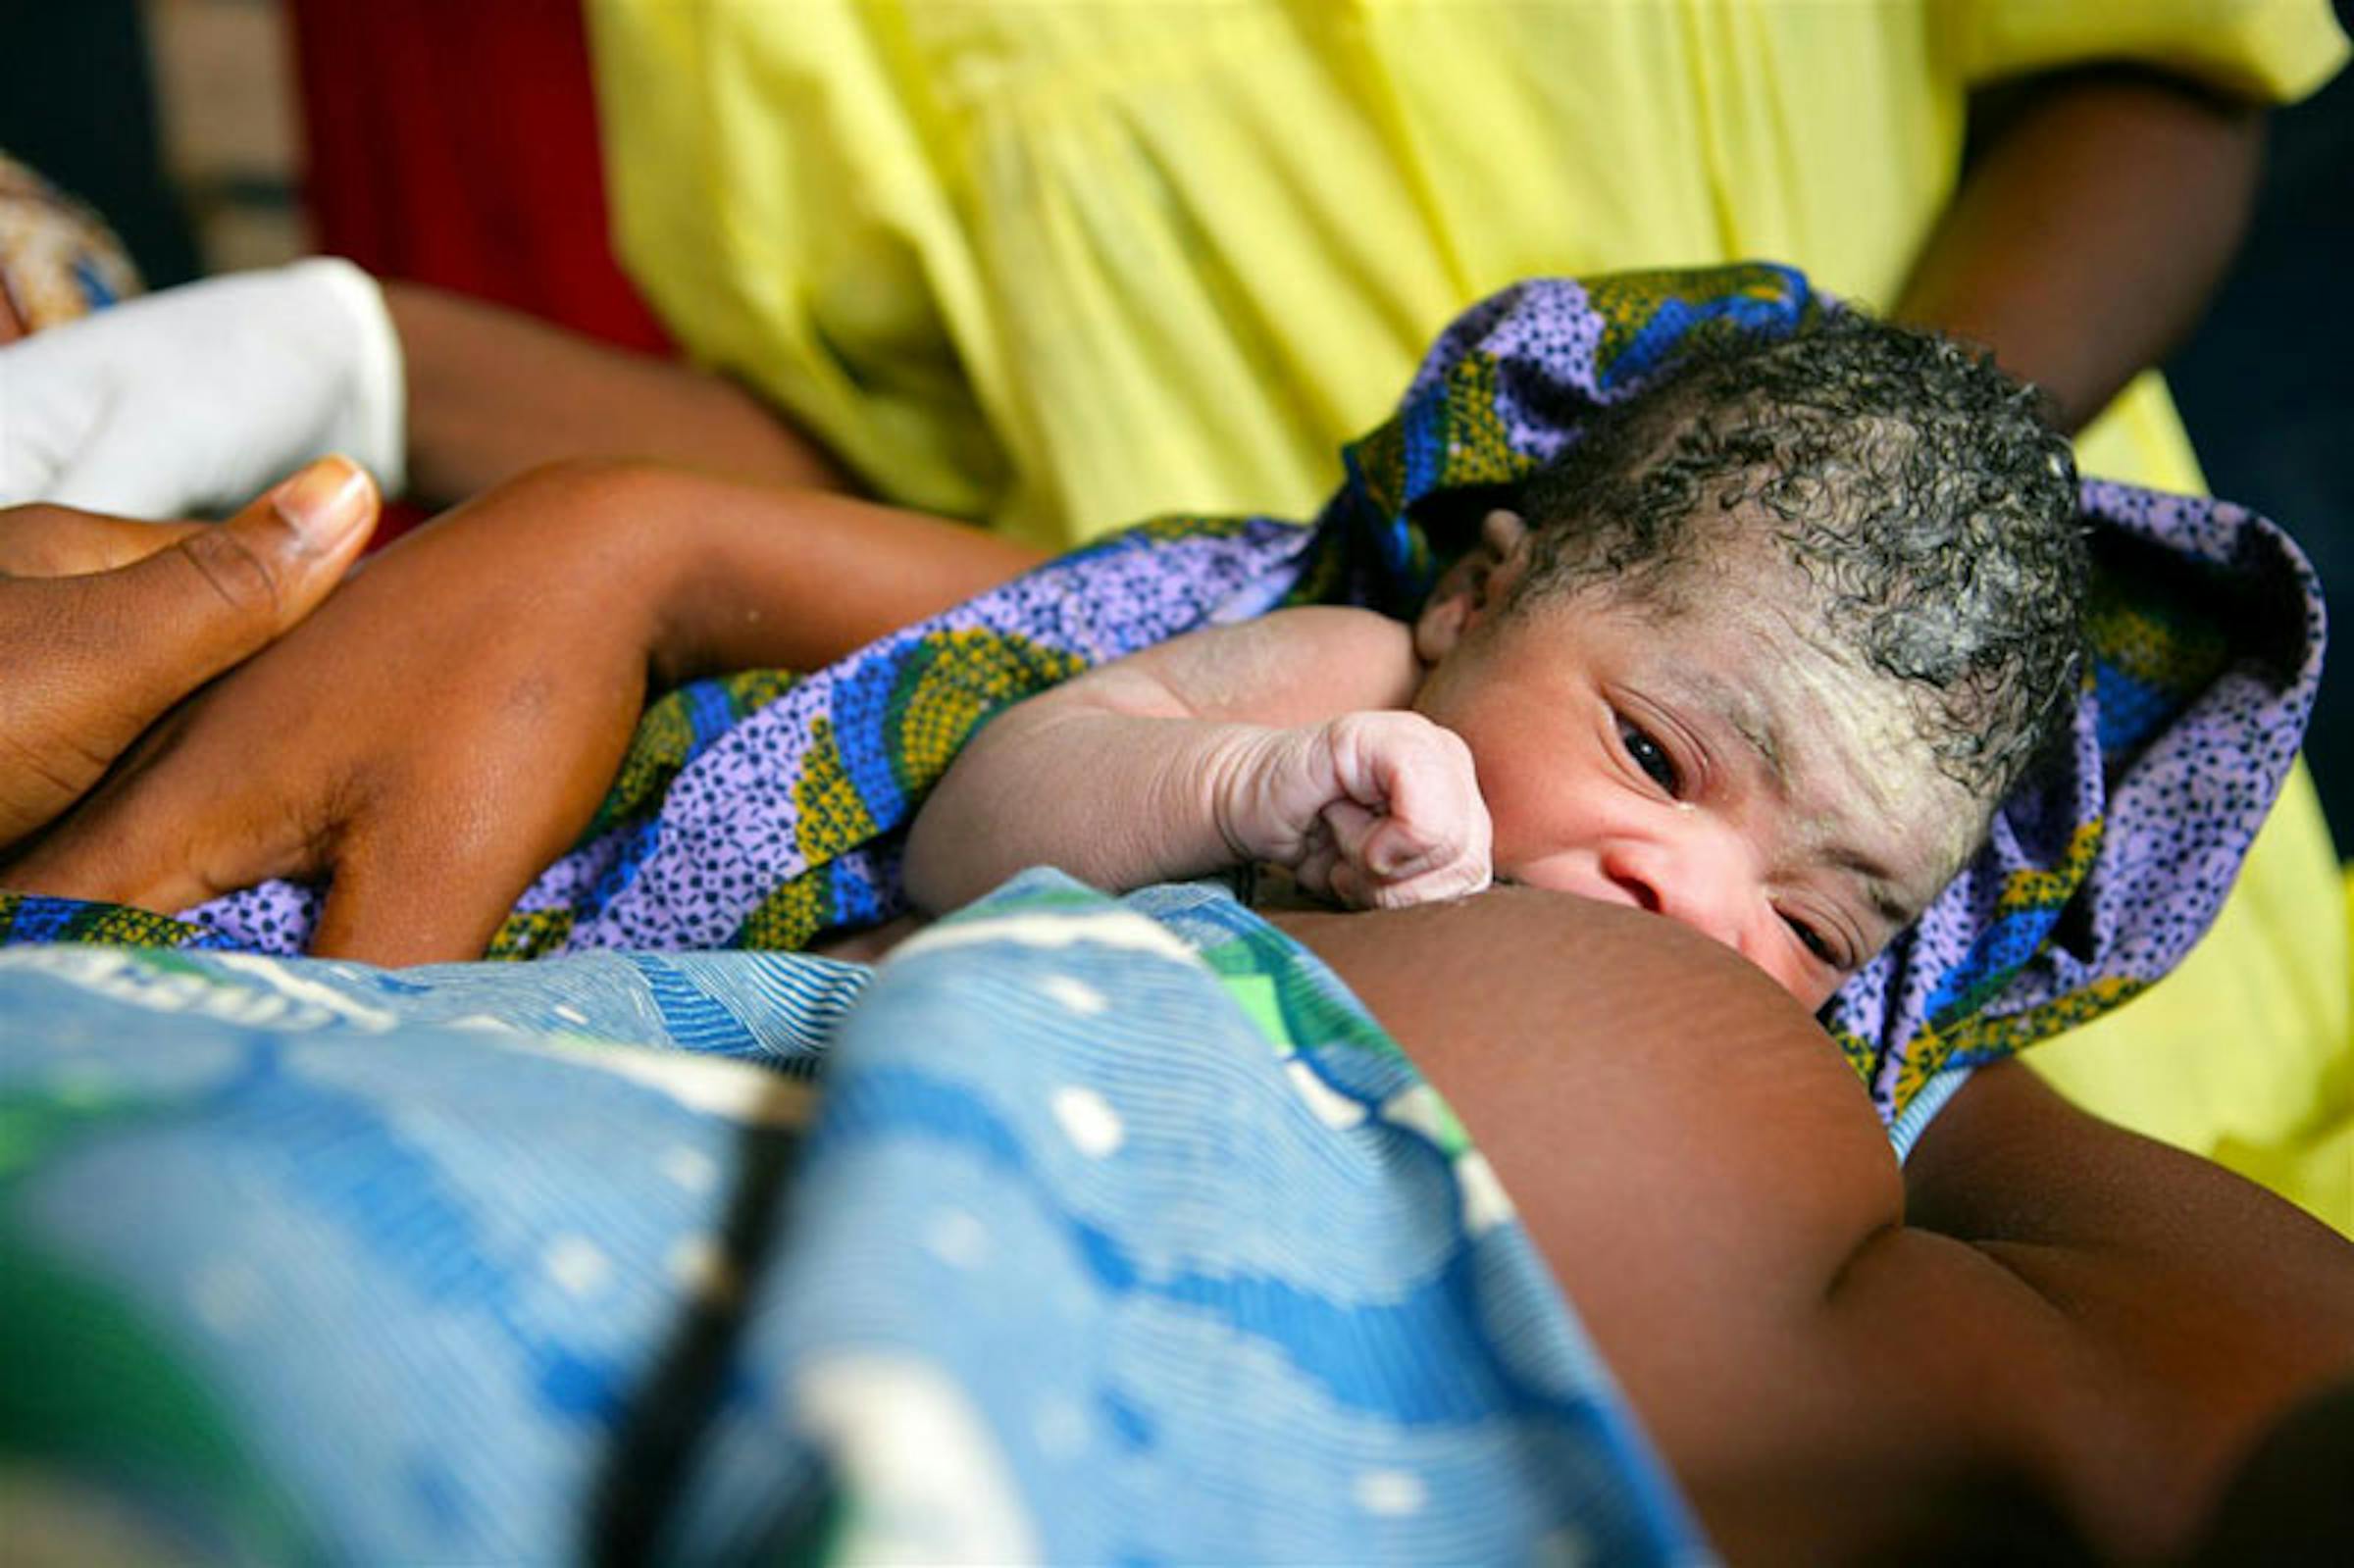 Una donna allatta al seno il suo bambino 30 minuti dopo la nascita nell'ospedale di Maradi in Niger, paese con bassissima percentuale di allattamento al seno nei primi mesi di vita e tassi elevatissimi di mortalità infantile - ©UNICEF/NYHQ2010-3049/Pirozzi